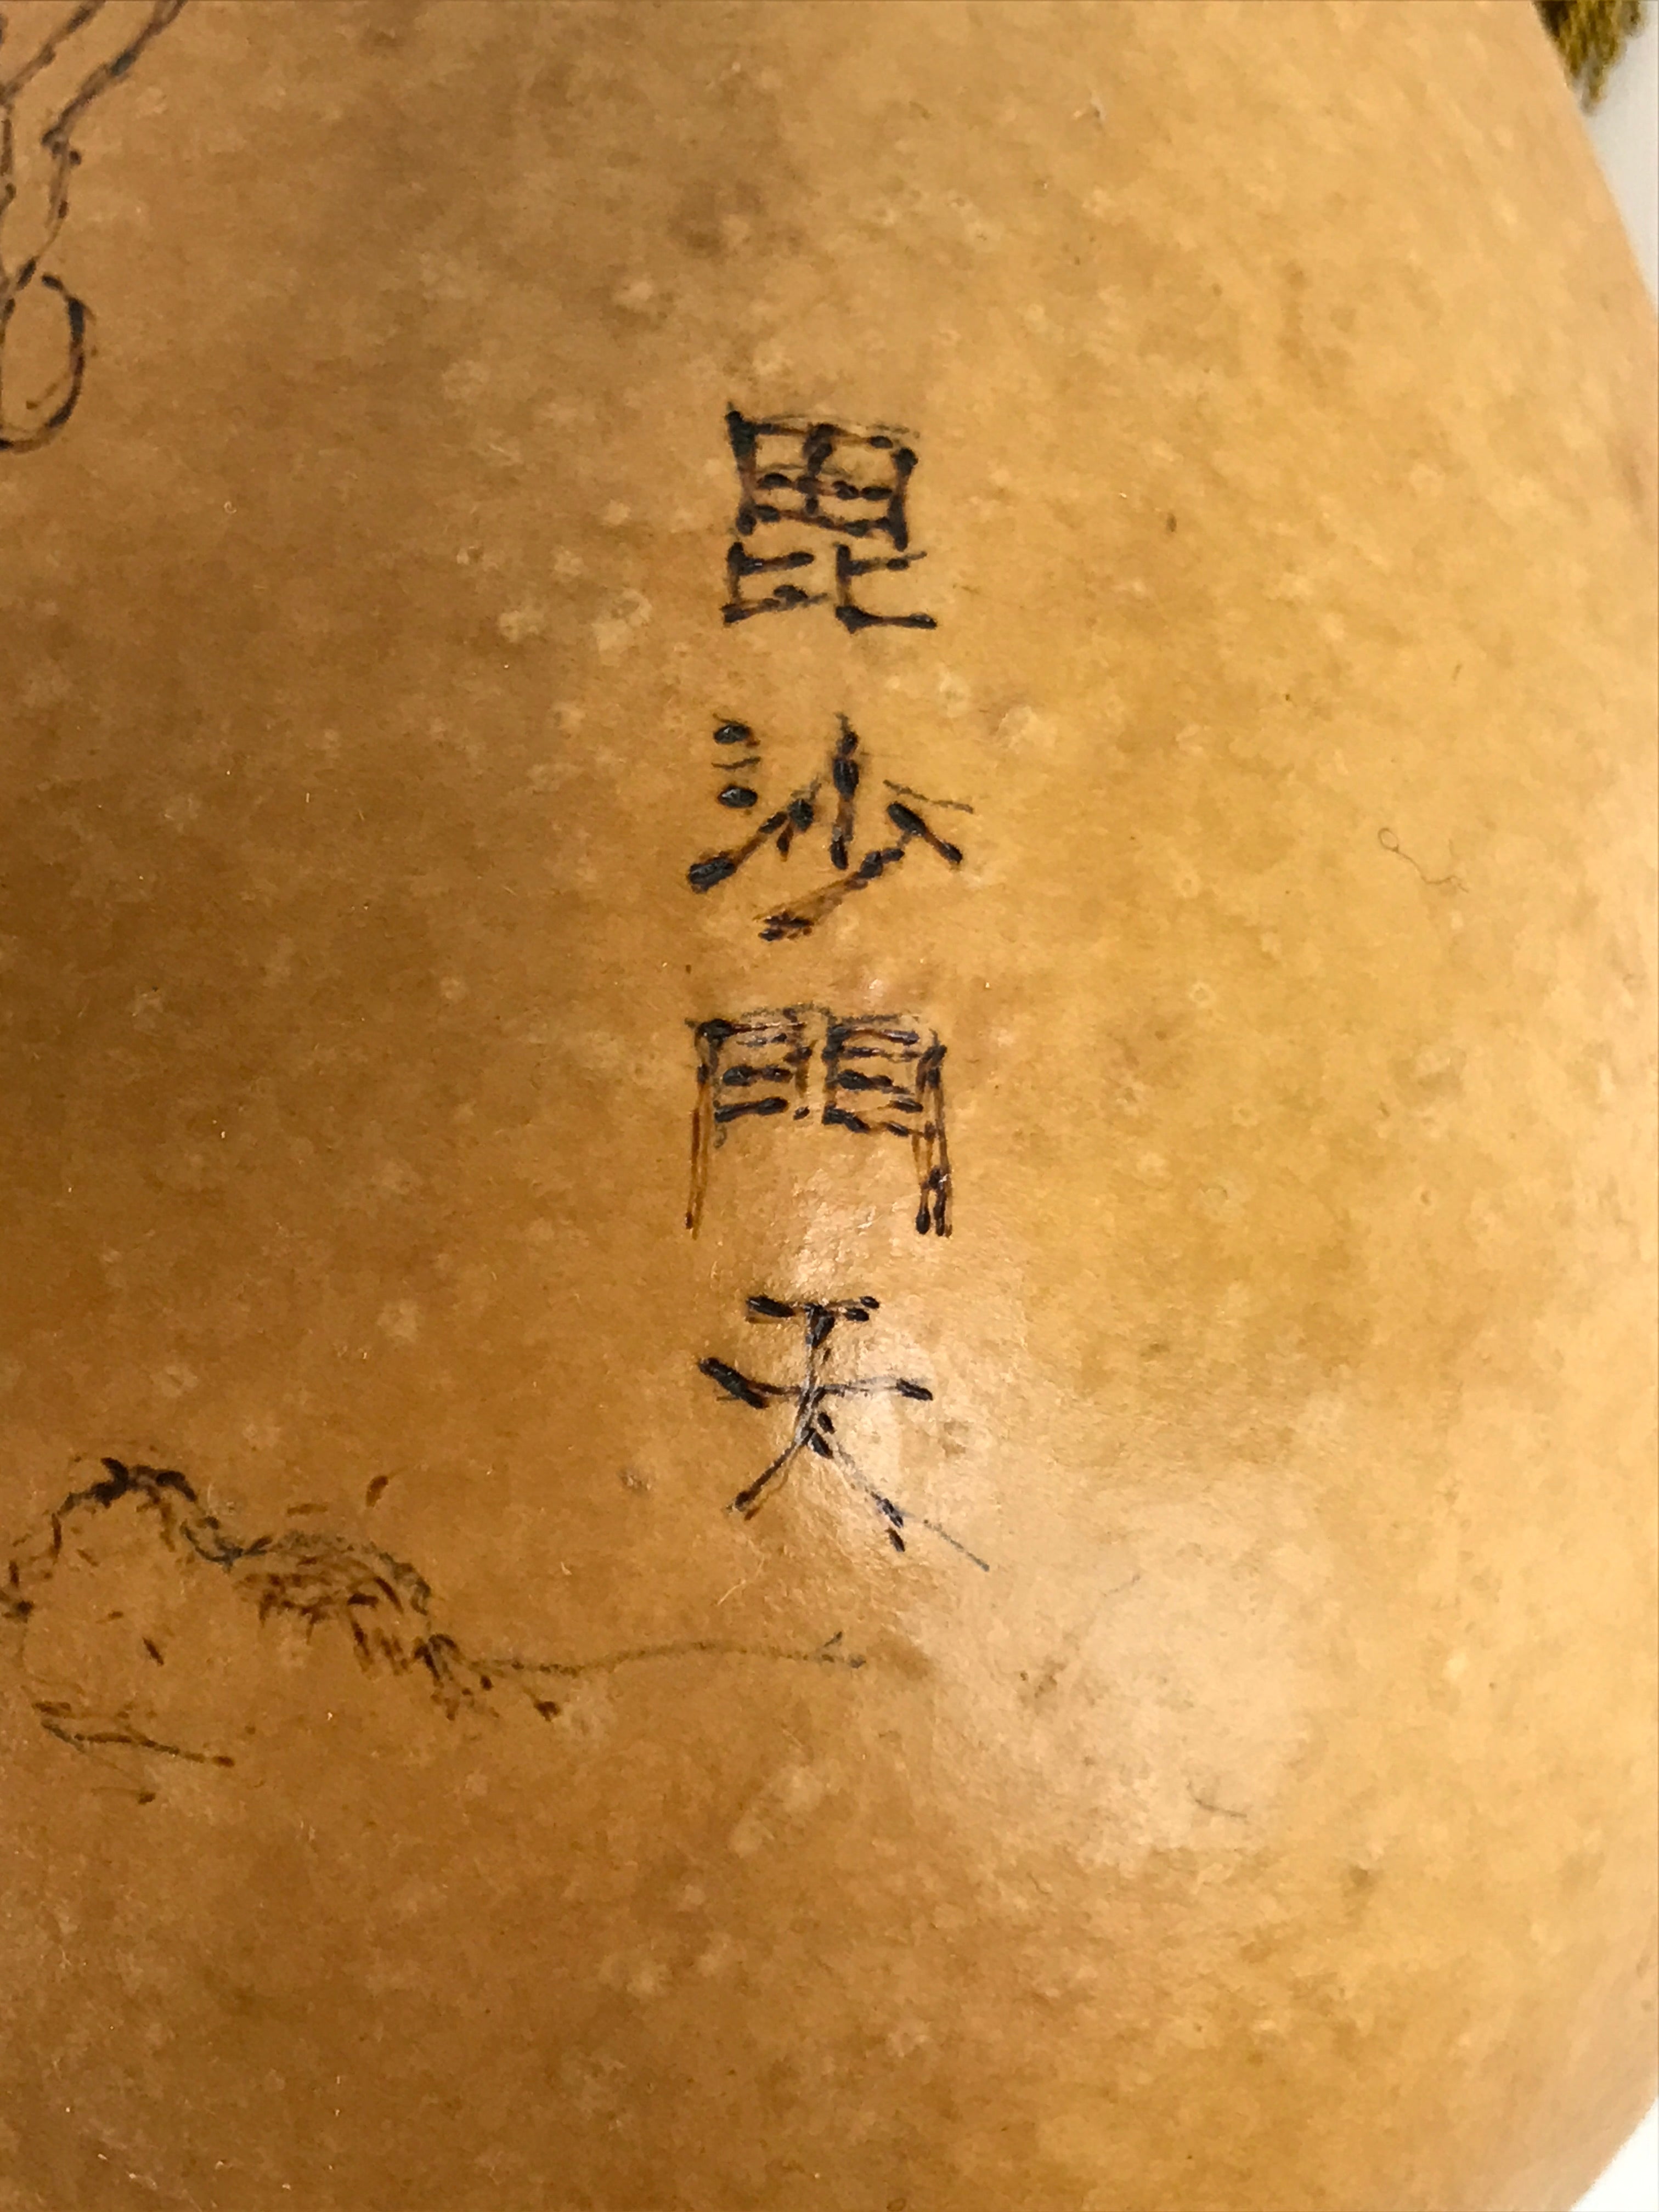 Japanese Natural Hyotan Gourd Vtg Sake Bottle Bishamonten Seven Lucky Gods G265